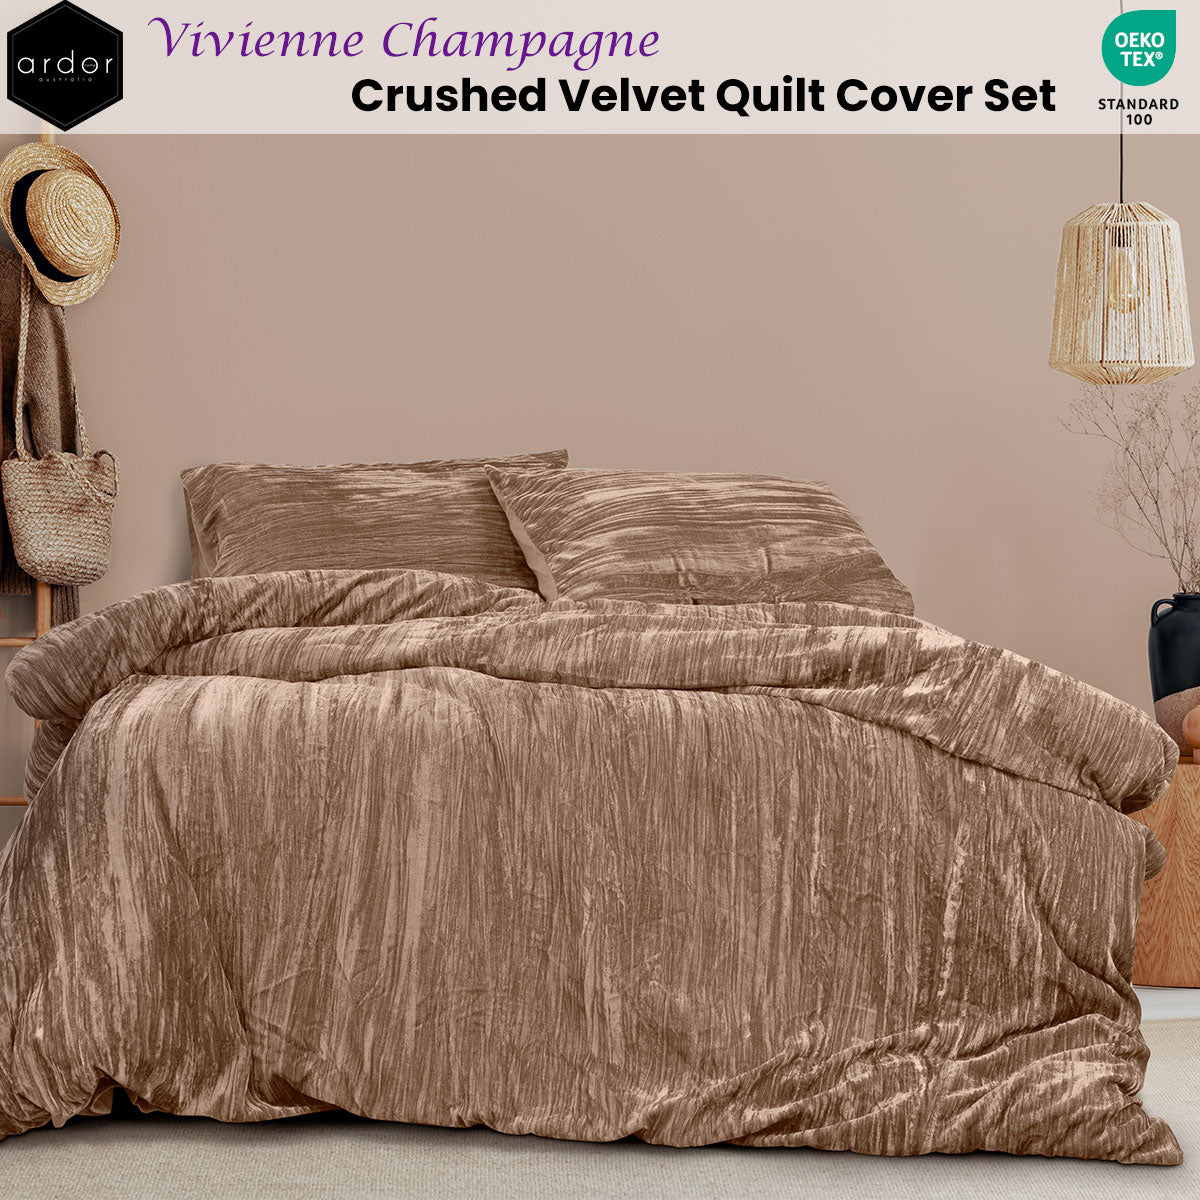 Ardor Vivienne Champagne Crushed Velvet Quilt Cover Set King